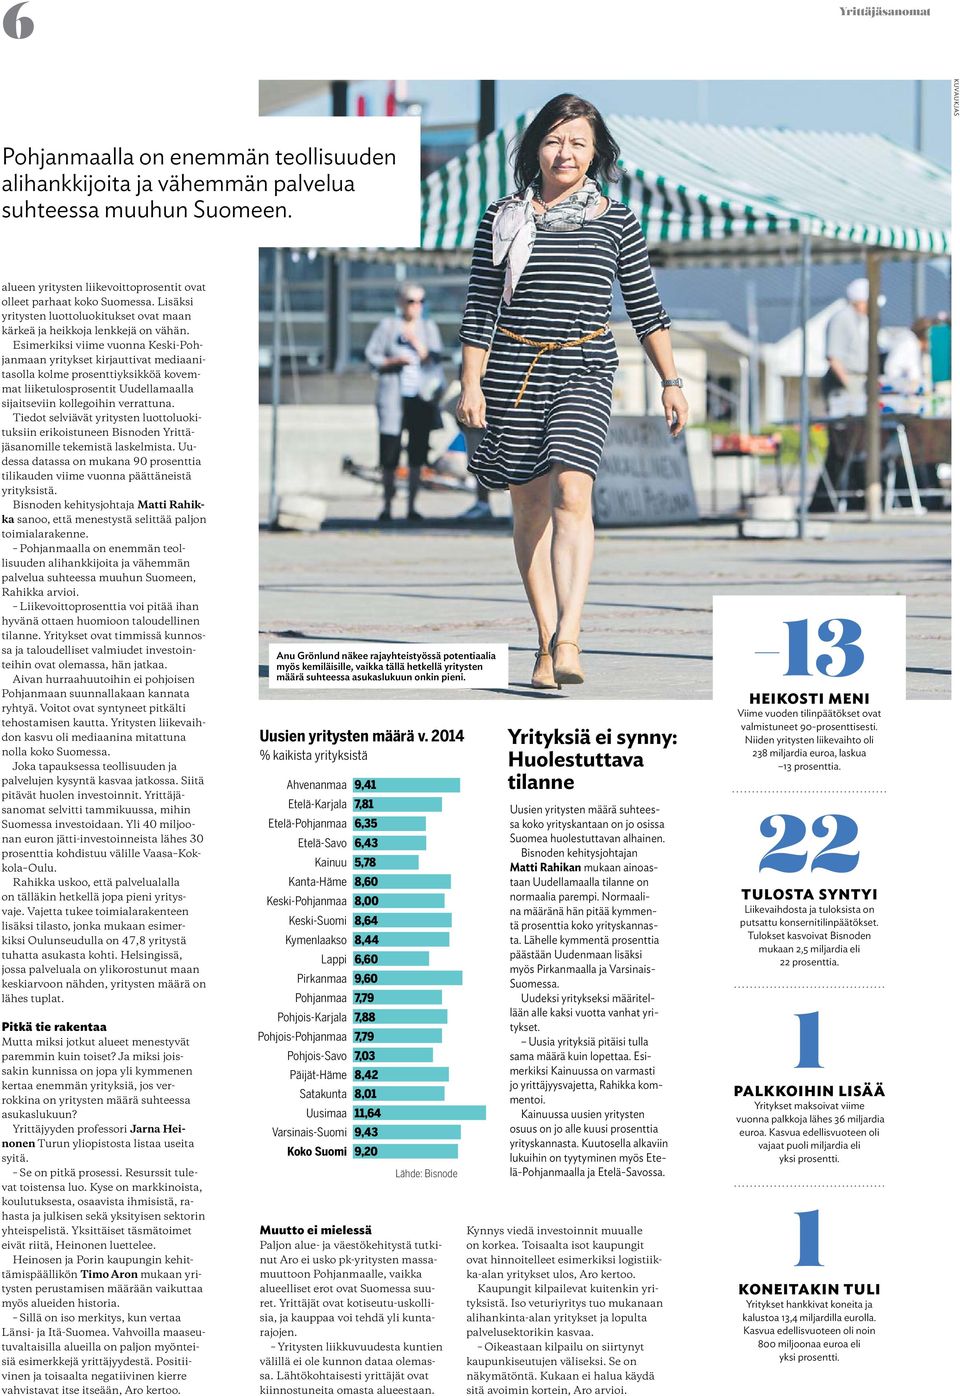 Esimerkiksi viime vuonna Keski-Pohjanmaan yritykset kirjauttivat mediaanitasolla kolme prosenttiyksikköä kovemmat liiketulosprosentit Uudellamaalla sijaitseviin kollegoihin verrattuna.